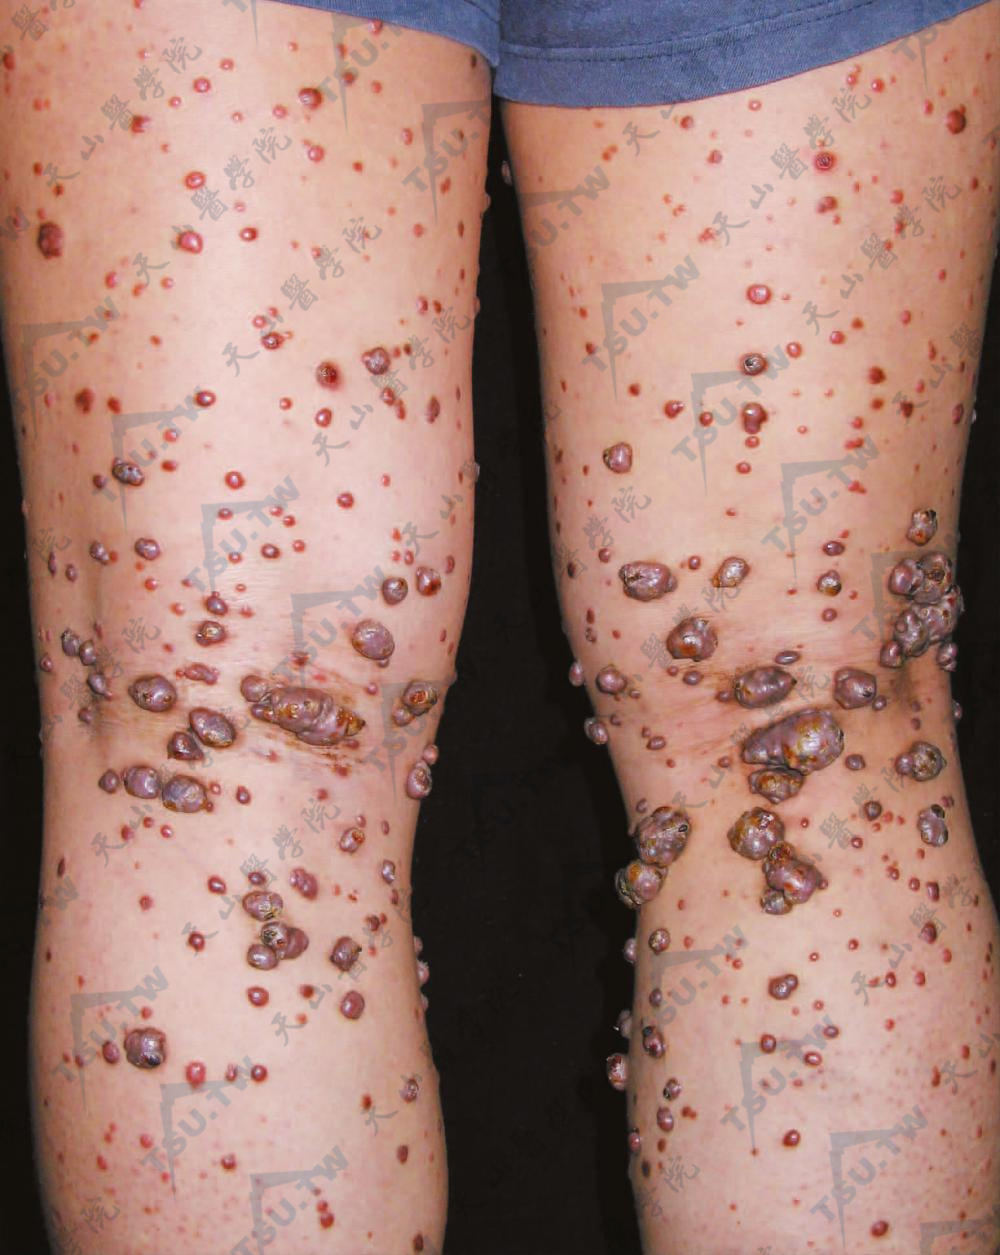 进行性结节性组织细胞瘤：双下肢后部可见许多大小不一的暗紫红色丘疹和结节（肉豆）